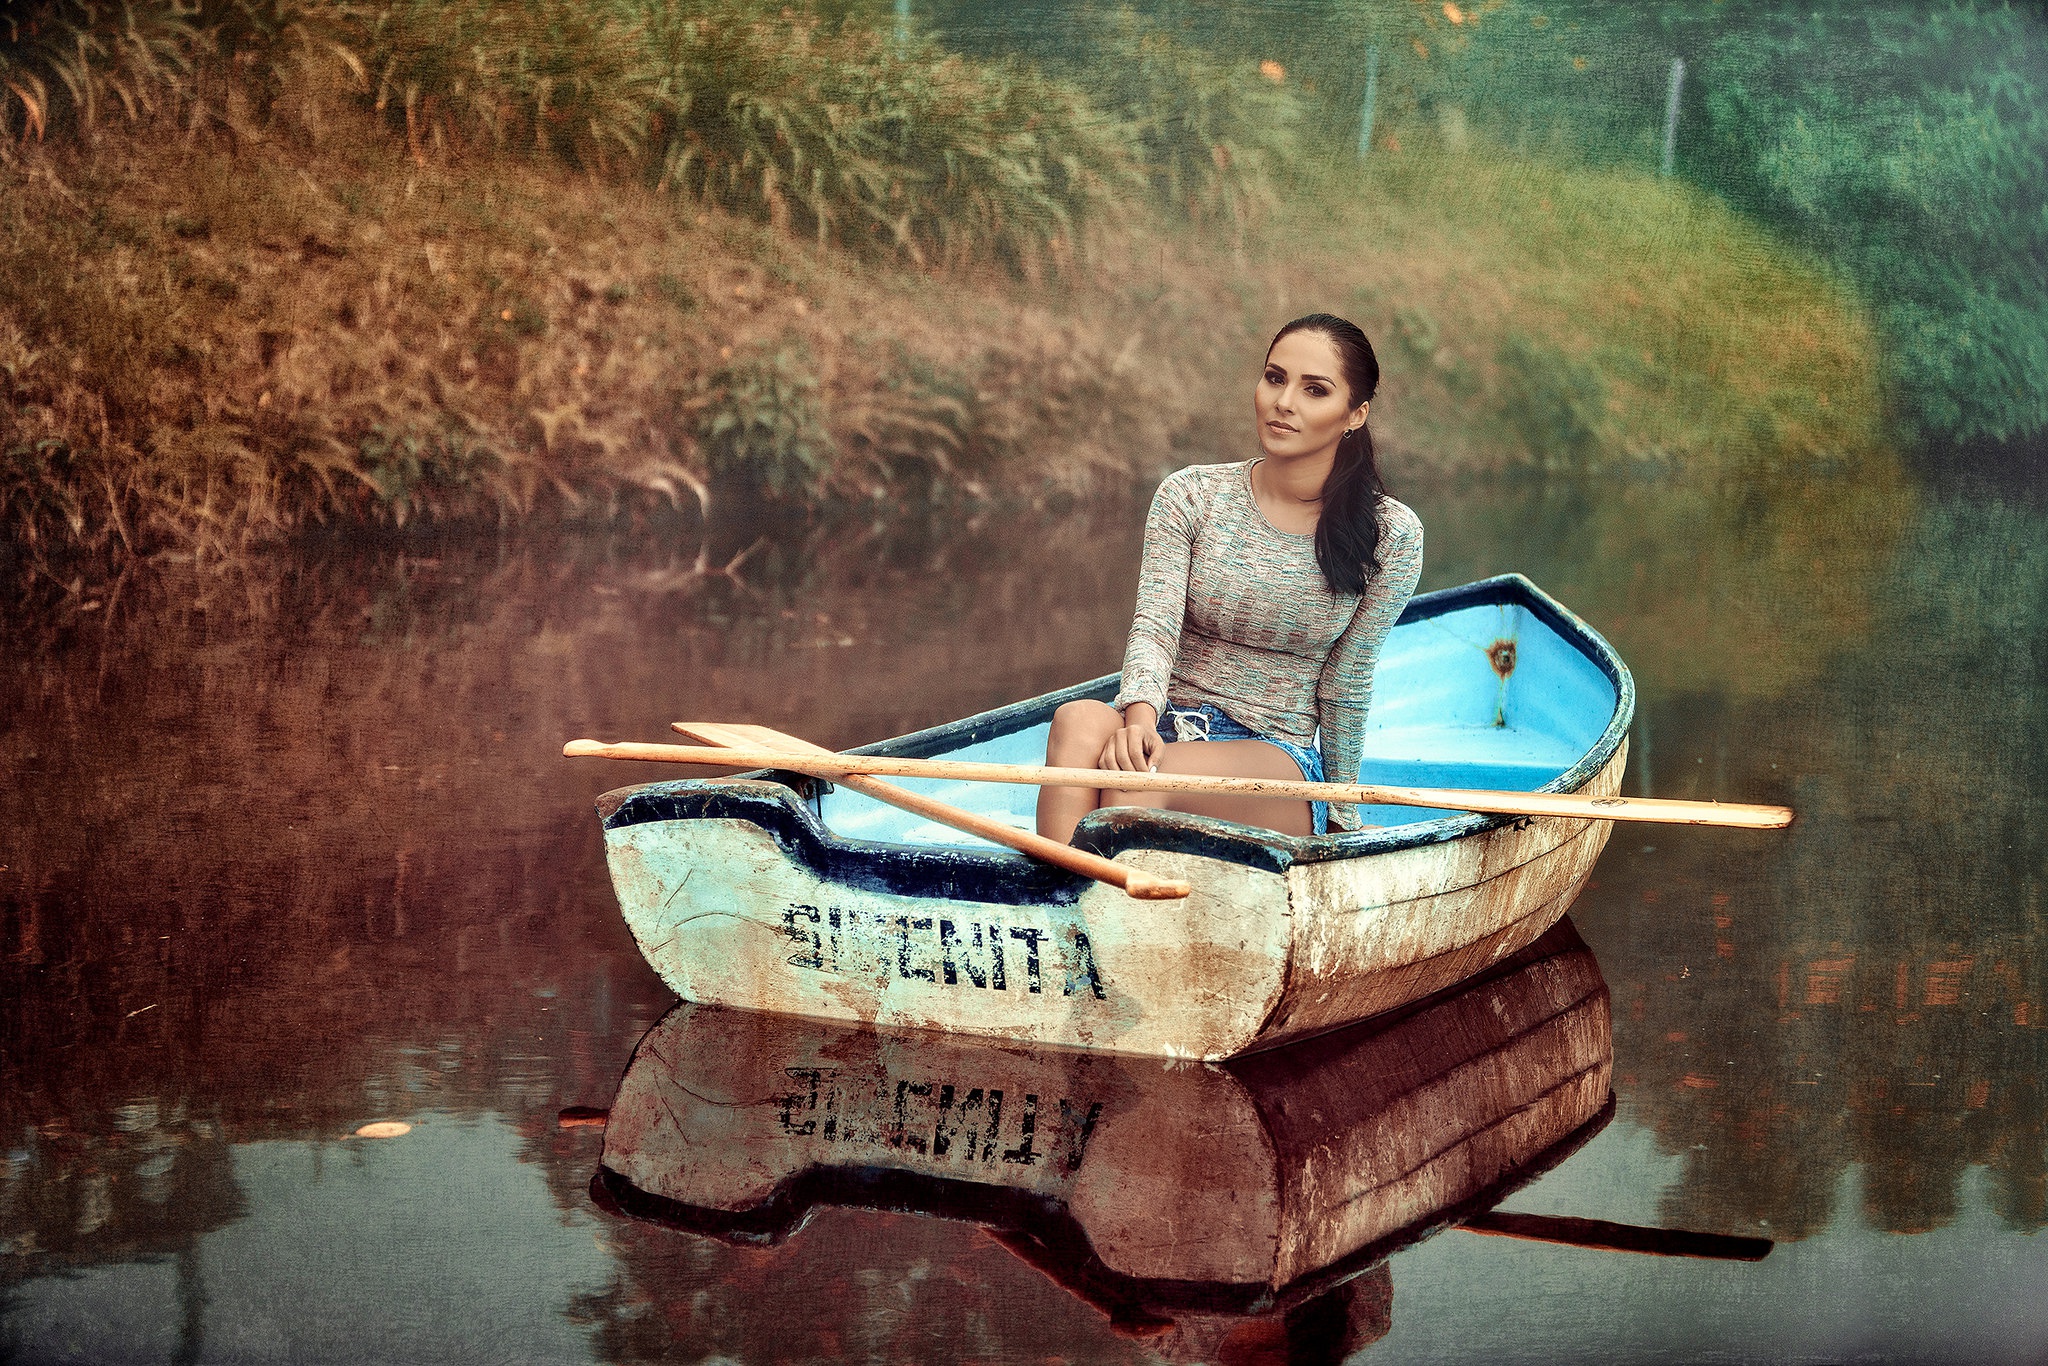 Жена сидя в лодке показывает сиськи фото